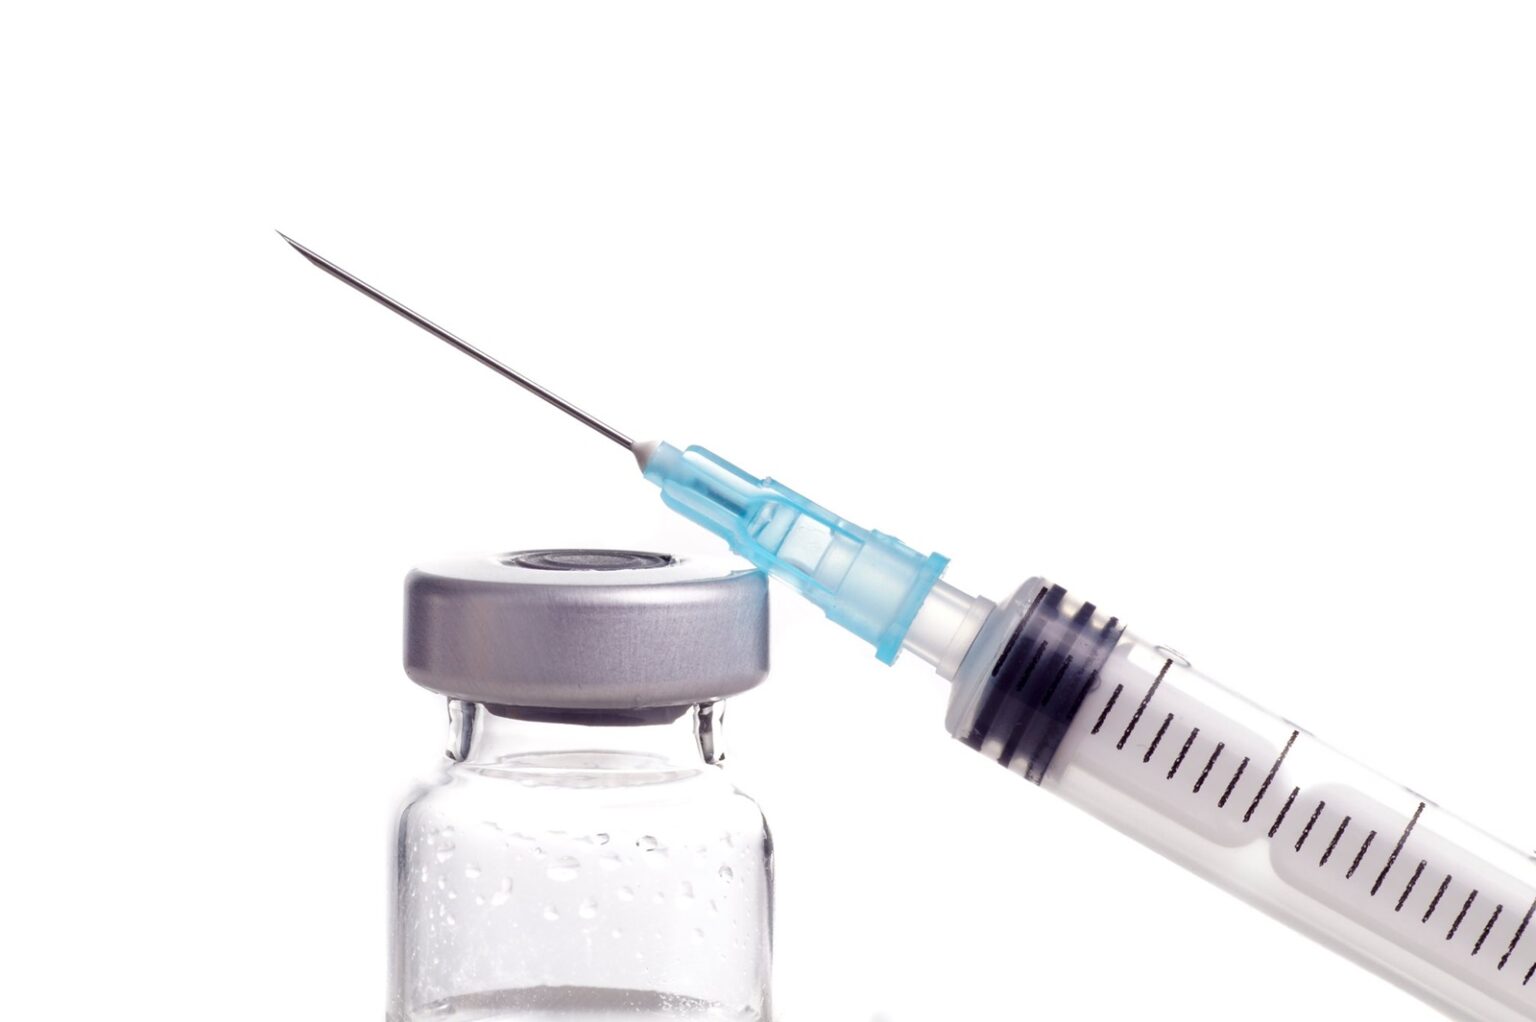 Studi: Perlindungan Vaksin Lebih Cepat Berkurang pada Pasien Kanker